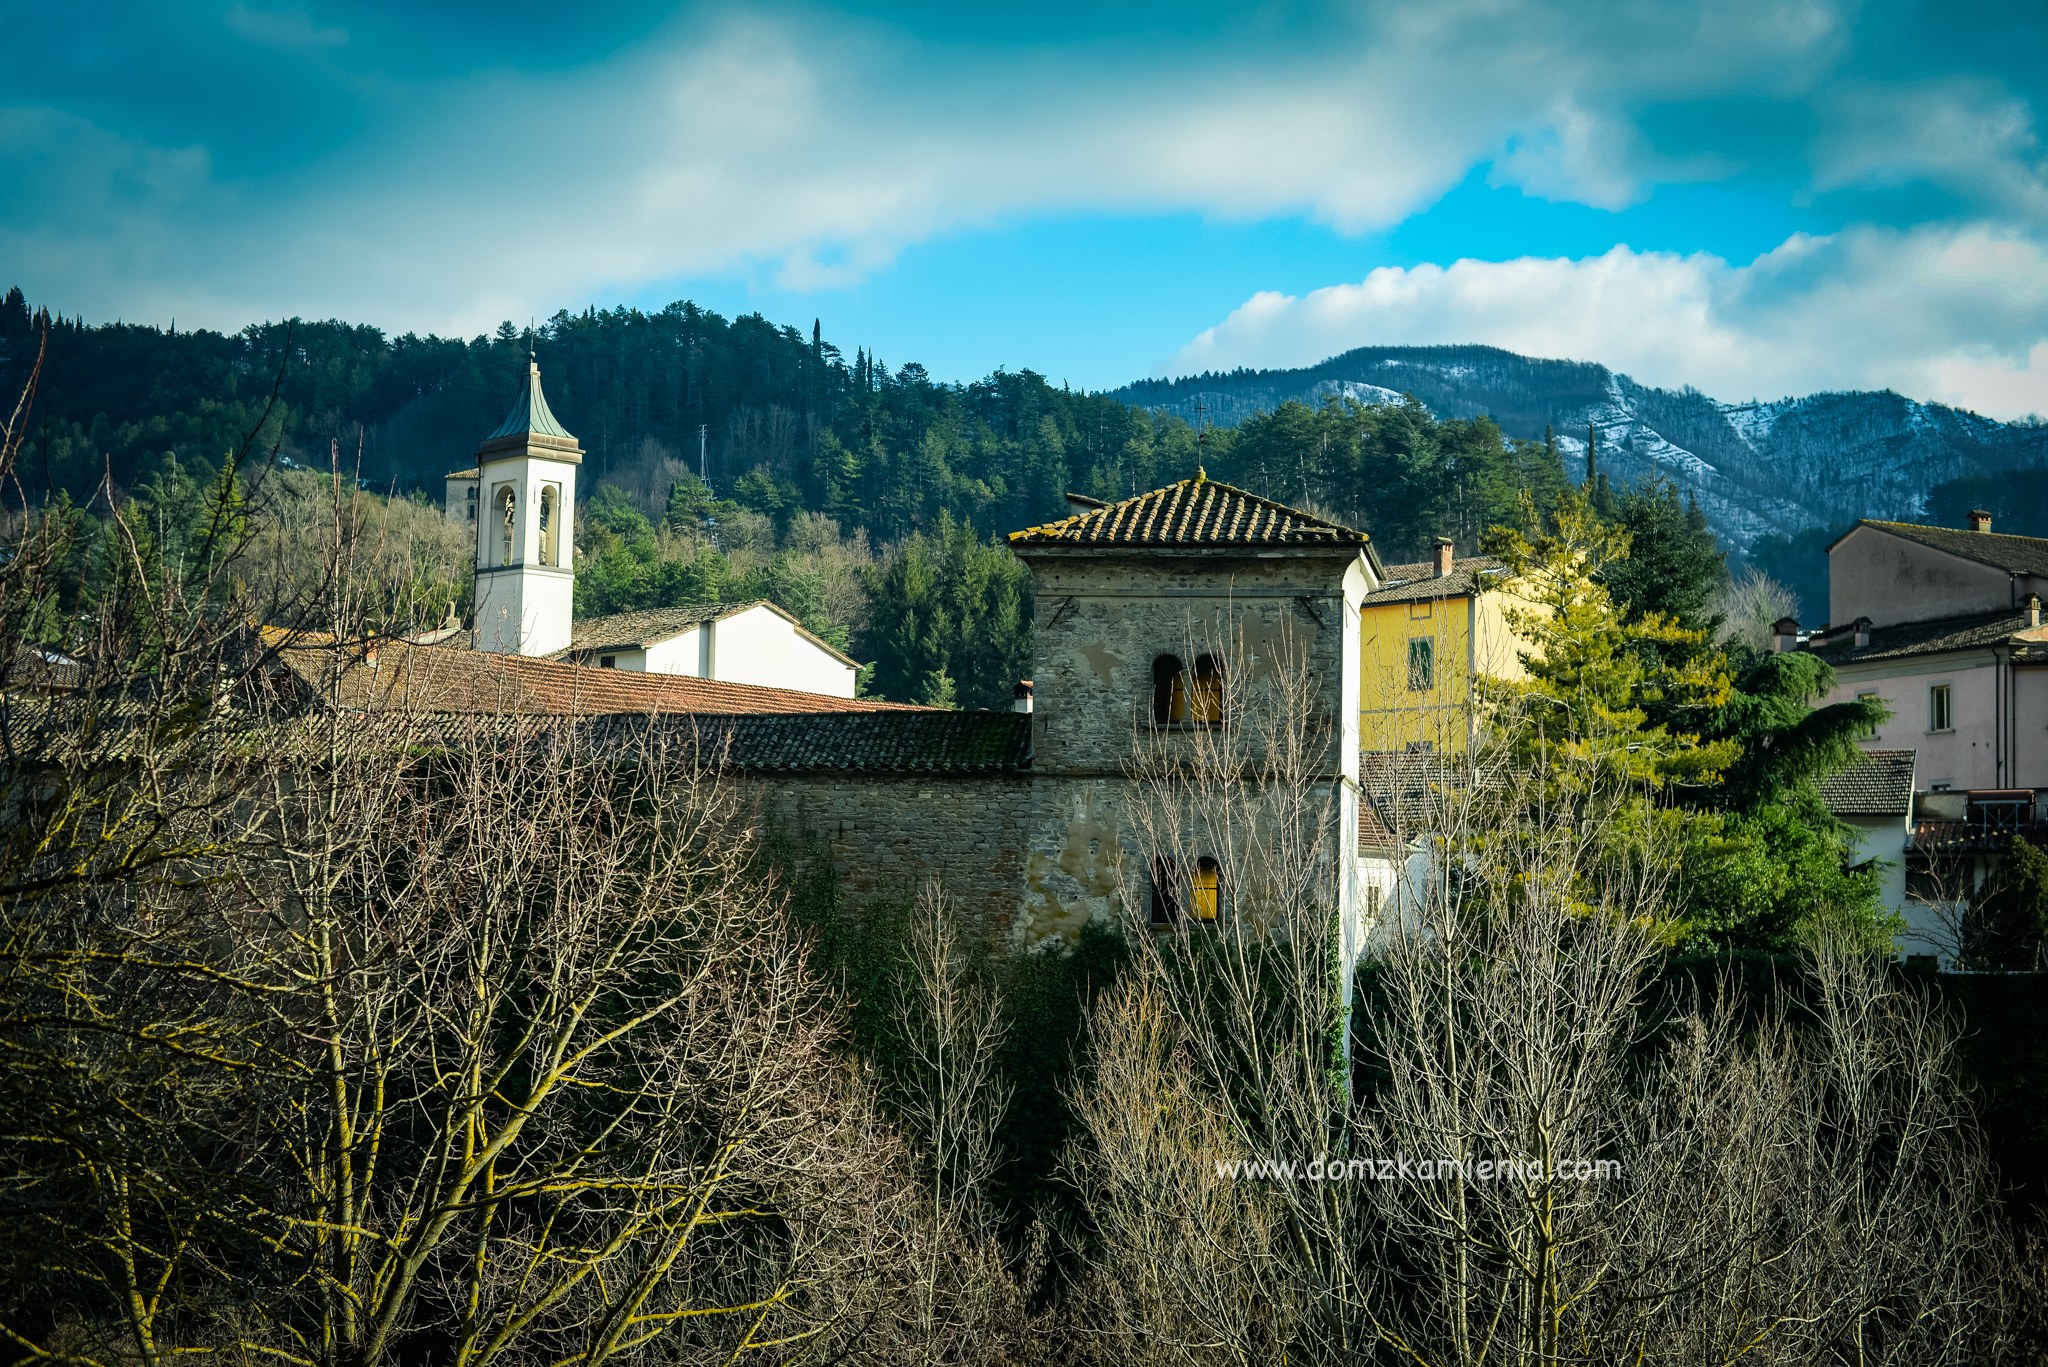 Dom z Kamienia blog - kiedy w Toskanii zaczyna się wiosna.